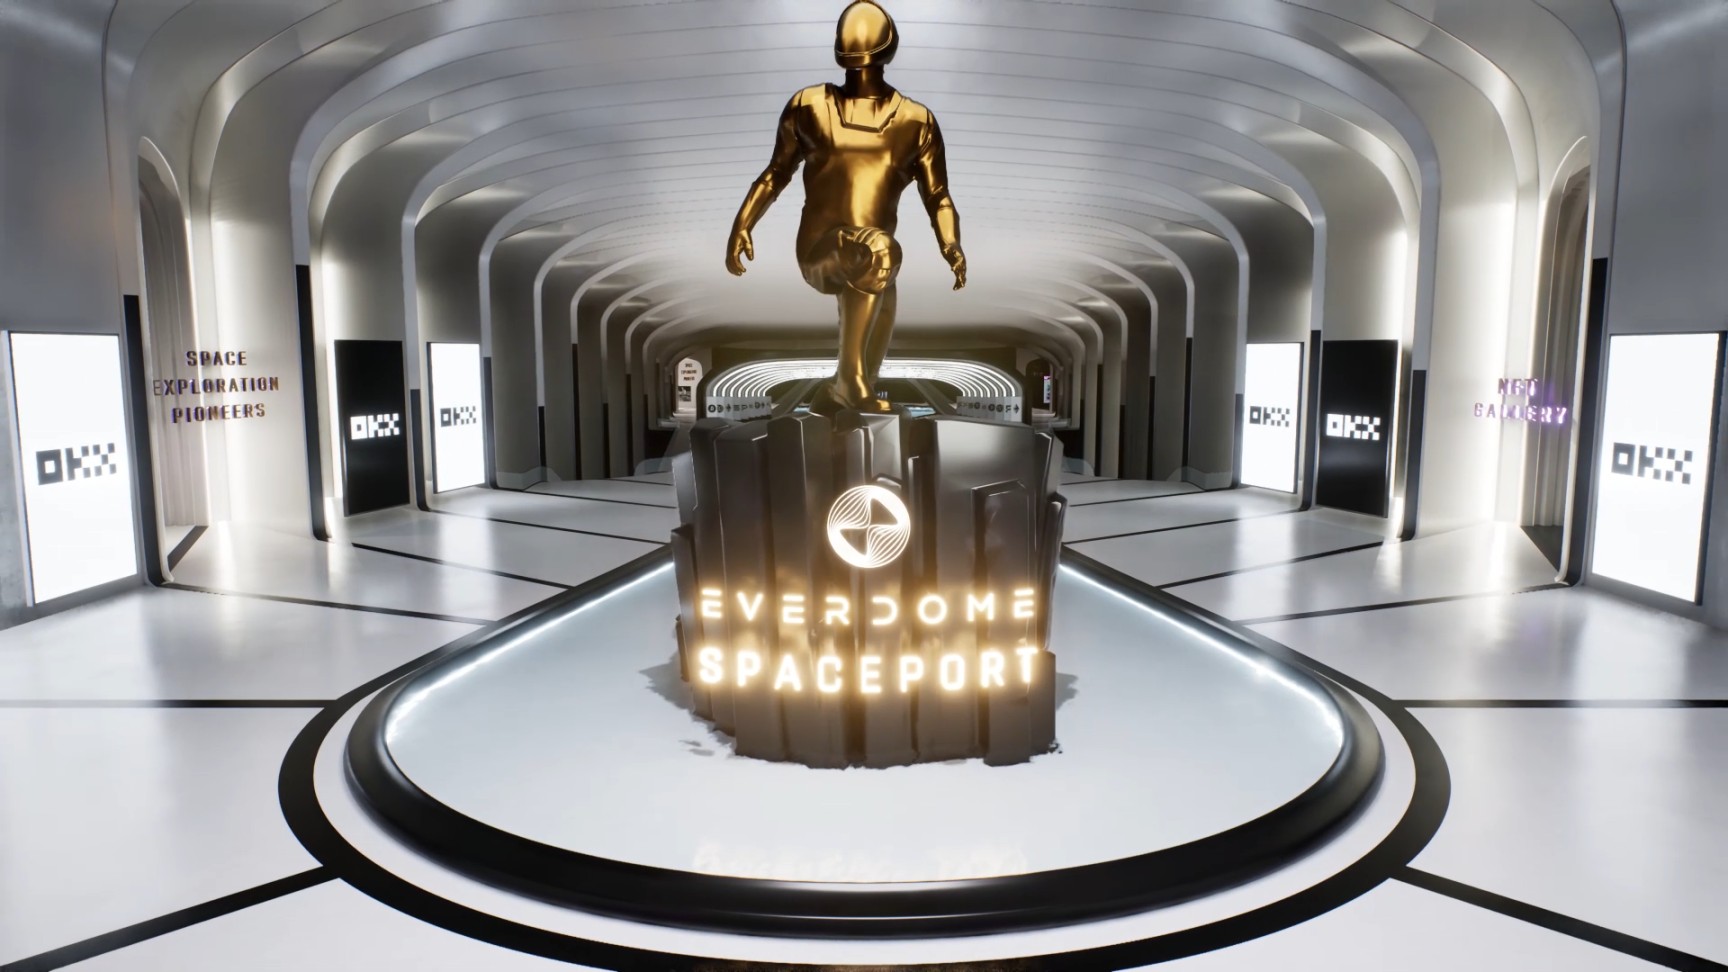 منصة تداول العملات الرقمية OKX تبرم اتفاقية شراكة مع Everdome لدخول عالمها الافتراضي